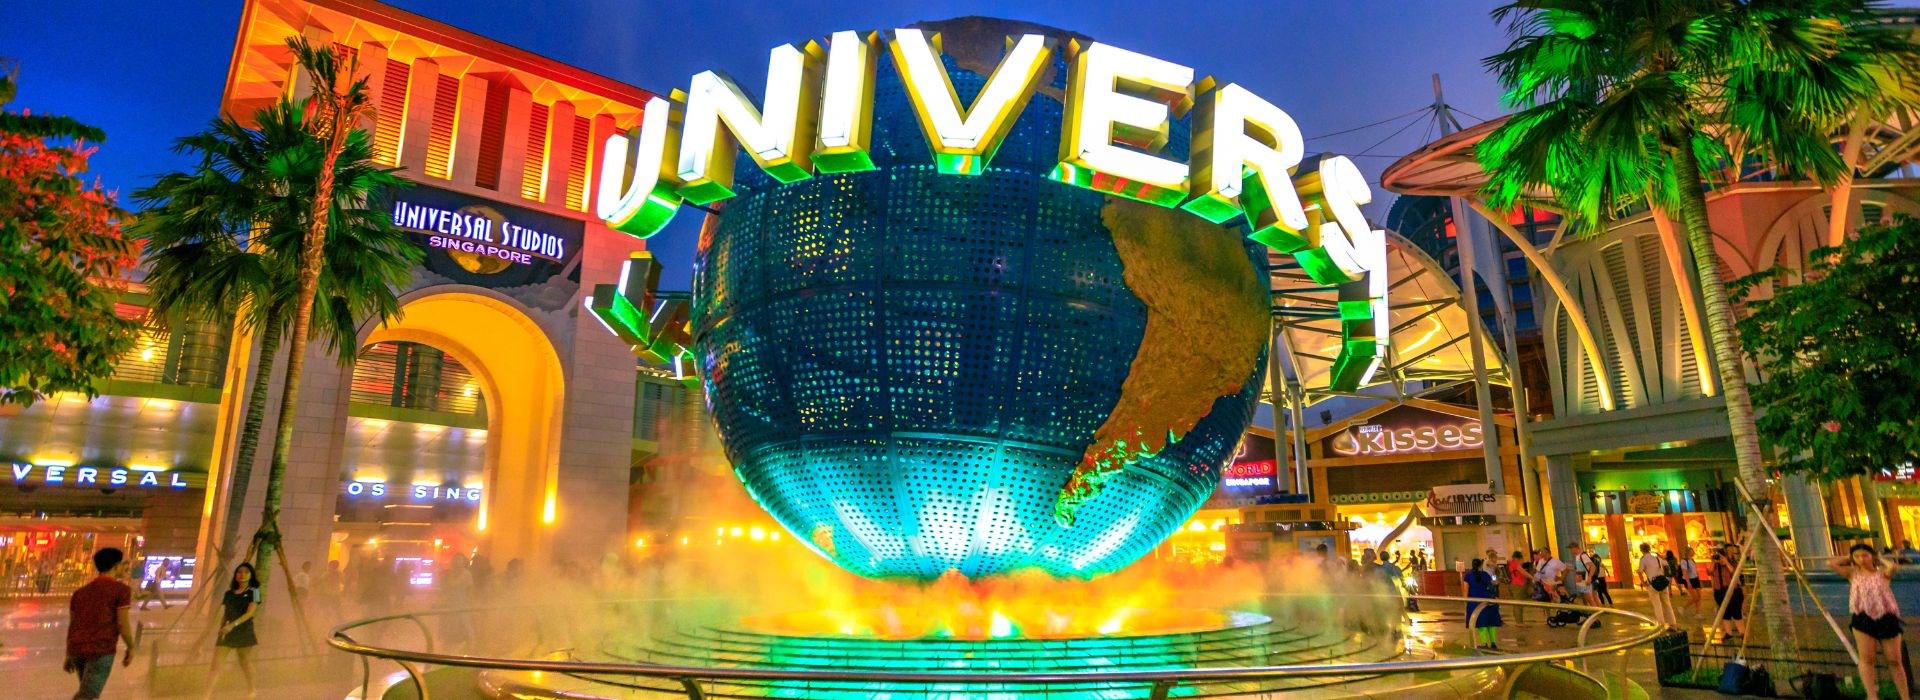 Visiter Universal Studios - Etats-Unis